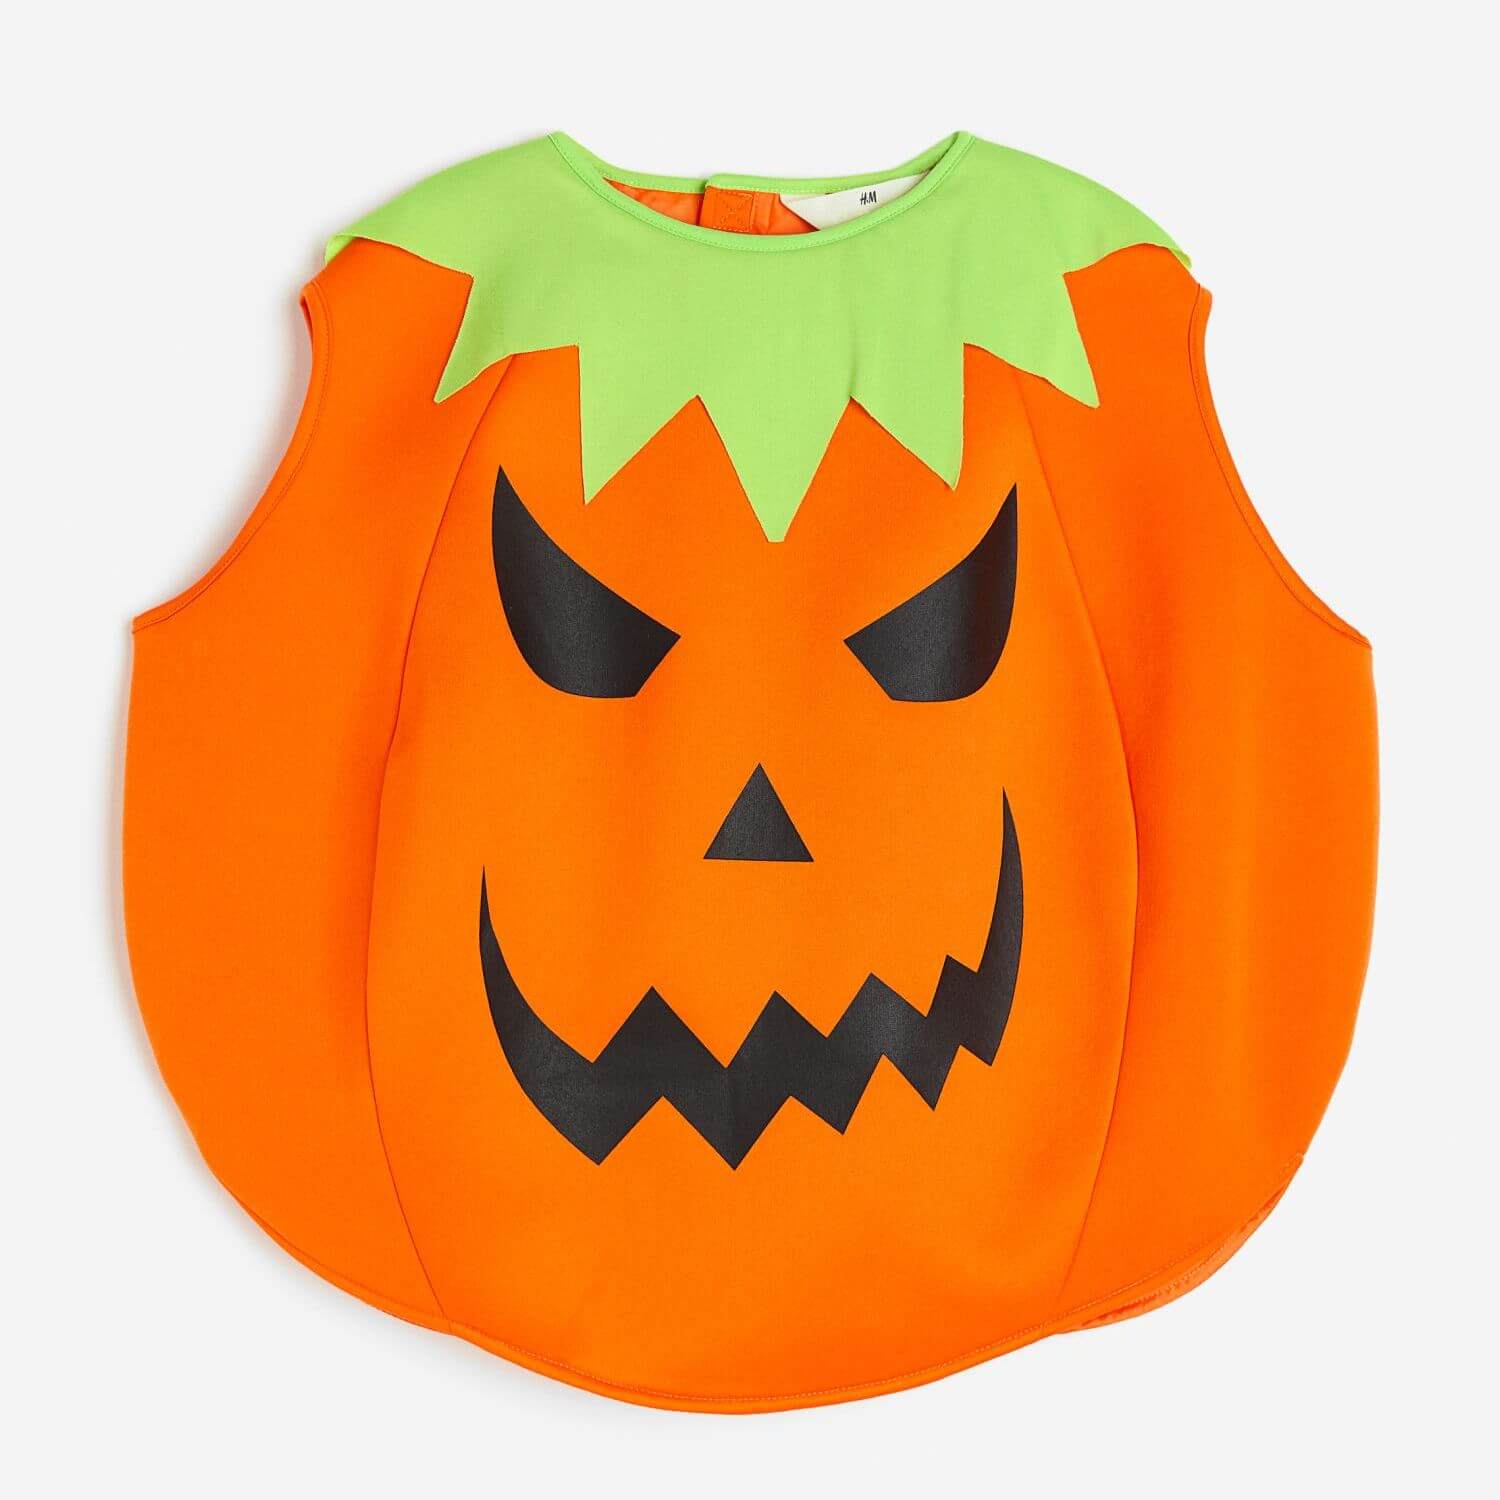 цена Карнавальный костюм H&M Pumpkin, оранжевый/черный/зеленый